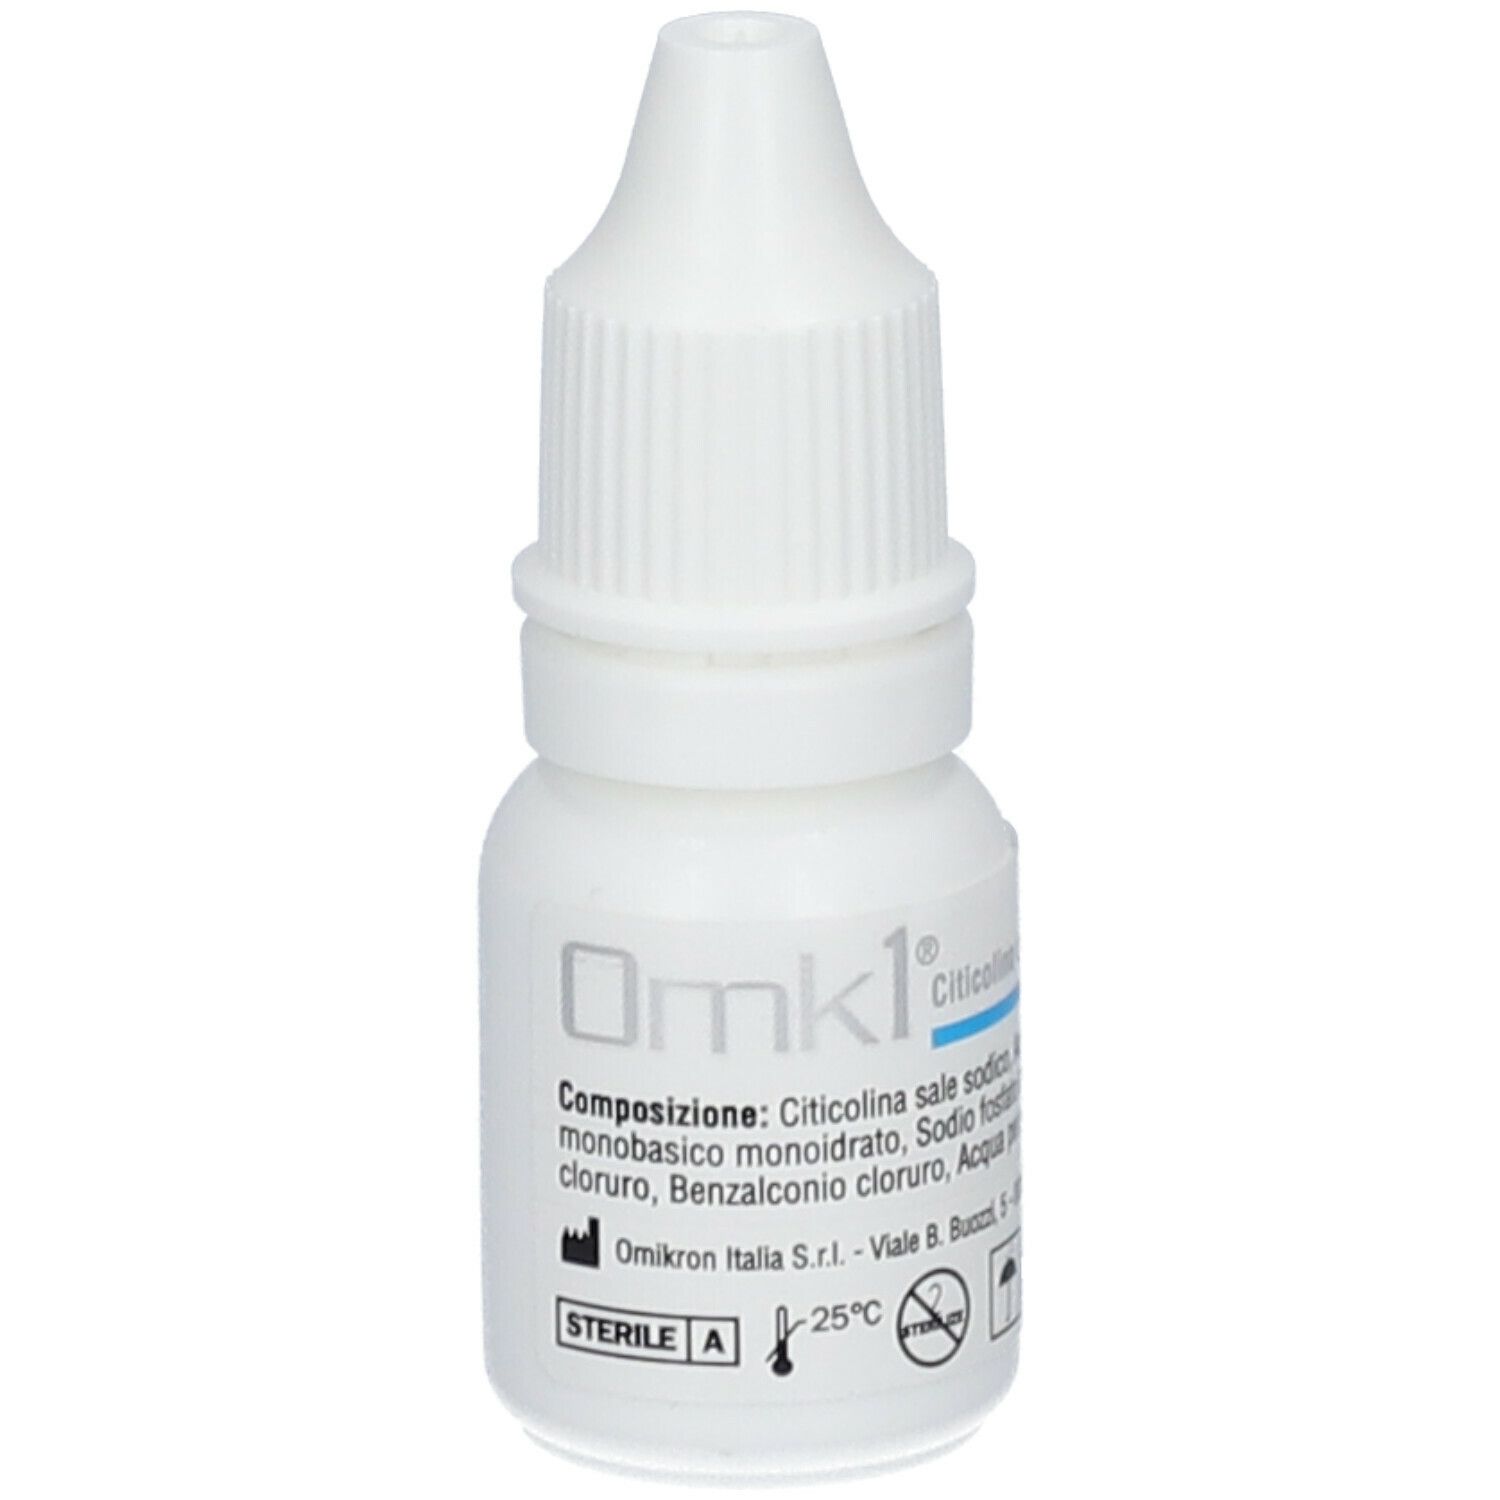 Image of Omk1® Soluzione oftalmica sterile